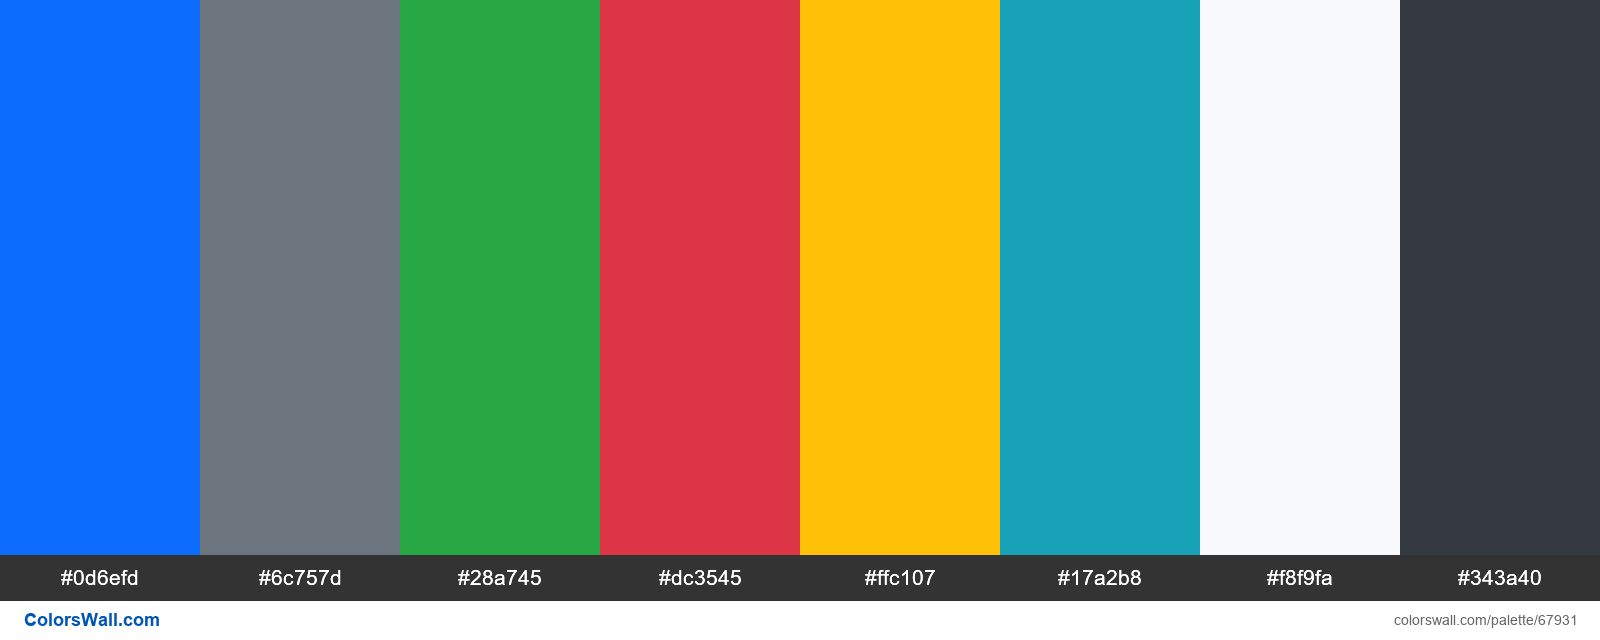 Hãy khám phá những Màu sắc Bootstrap 5 đầy phong cách và đa dạng, mang lại cho trang web của bạn vẻ đẹp hiện đại và thú vị hơn bao giờ hết. Chọn lựa từ nhiều lựa chọn màu sắc khác nhau, bạn sẽ không thể ngừng khám phá và sáng tạo các thiết kế đẹp mắt trong mắt người dùng.